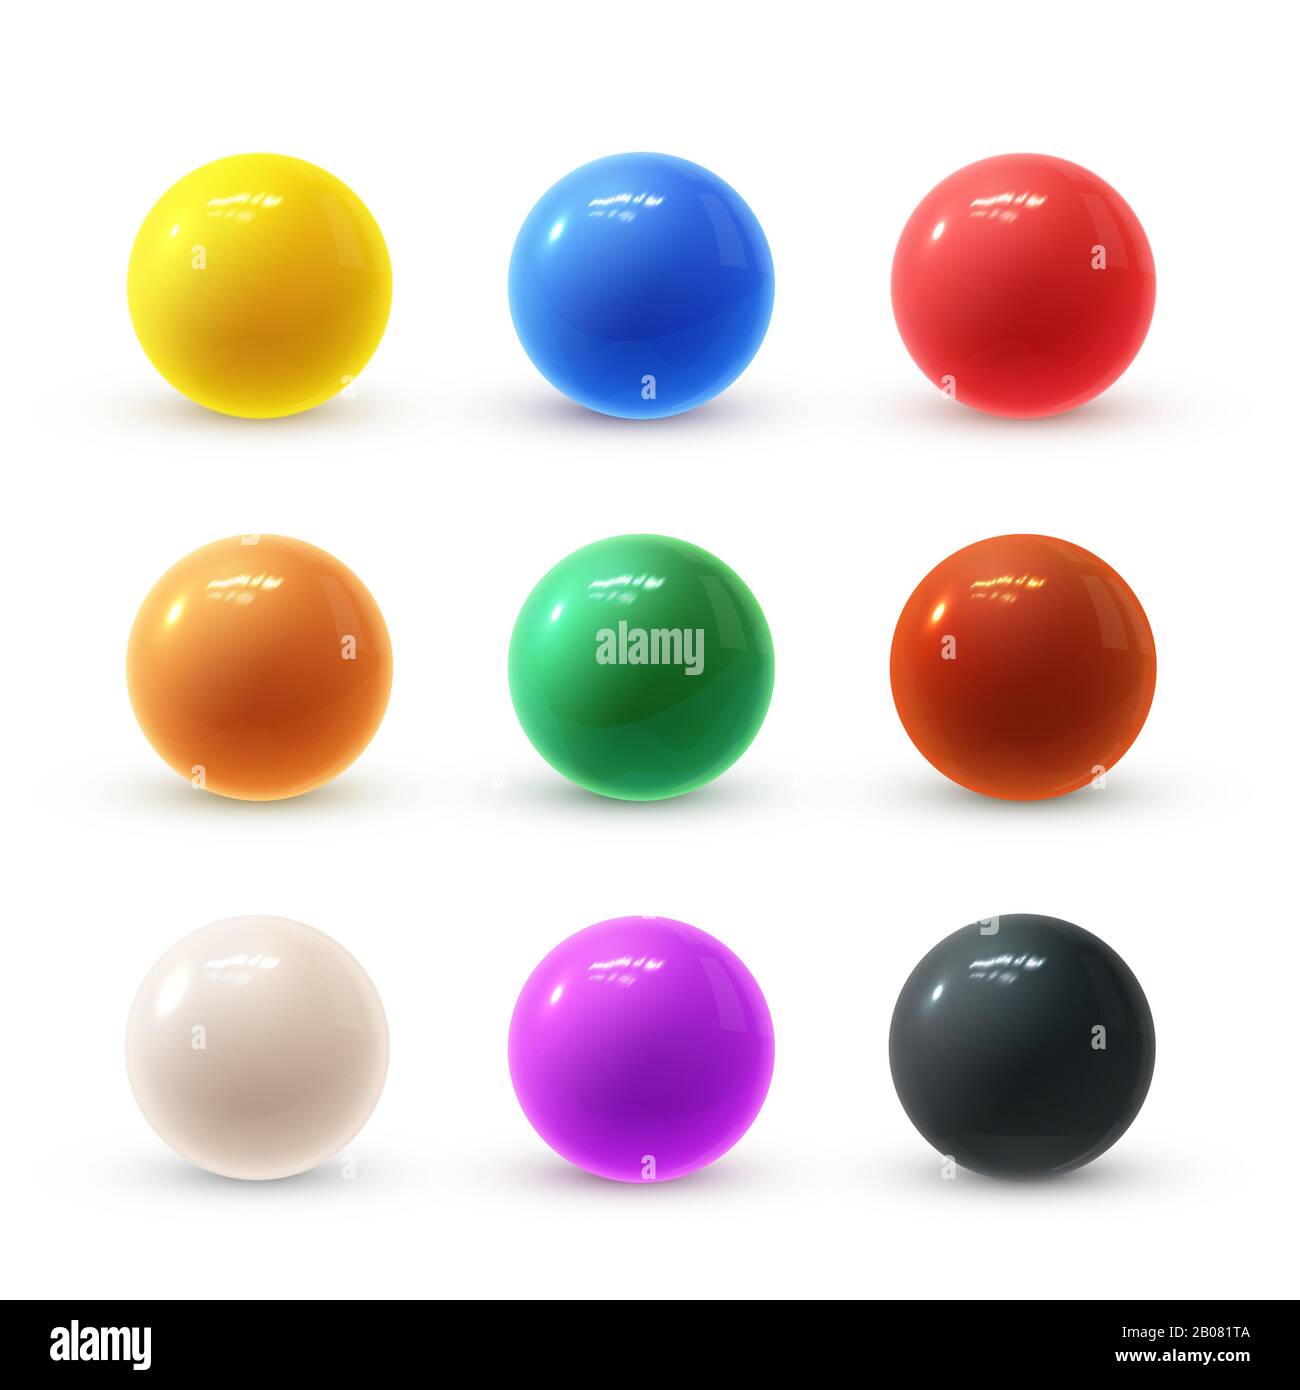 Realistico e moderno set vettoriale di coloratissime sfere in plastica lucida con riflessi luminosi Illustrazione Vettoriale